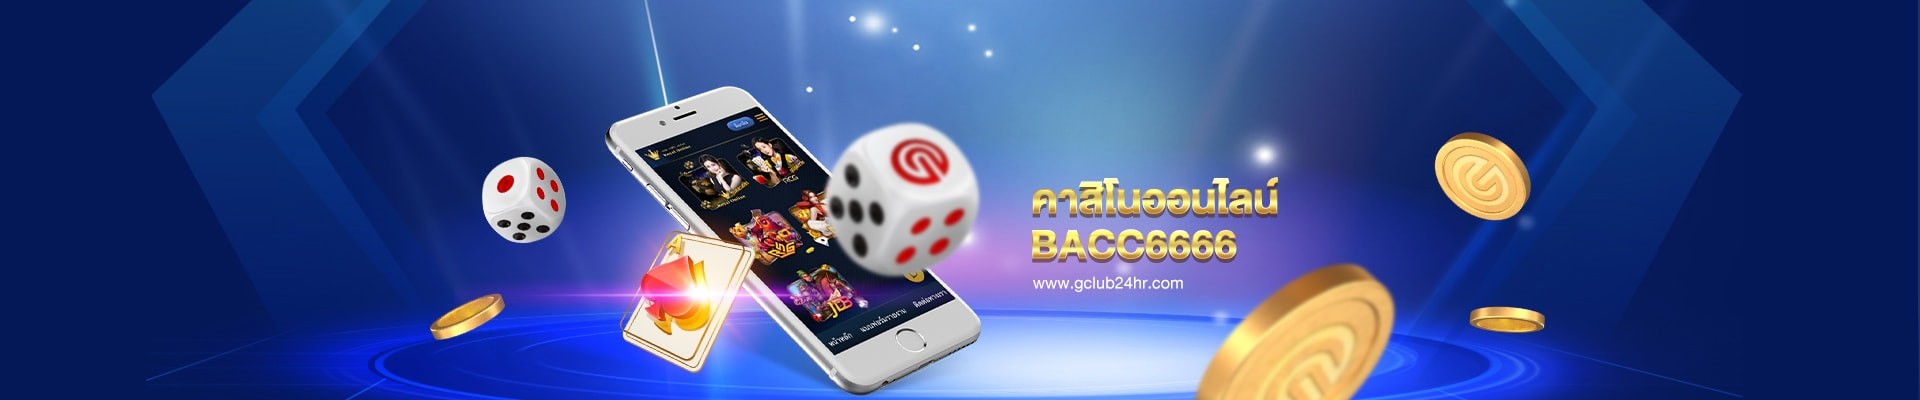 gclub24hr_casino_online_bacc6666